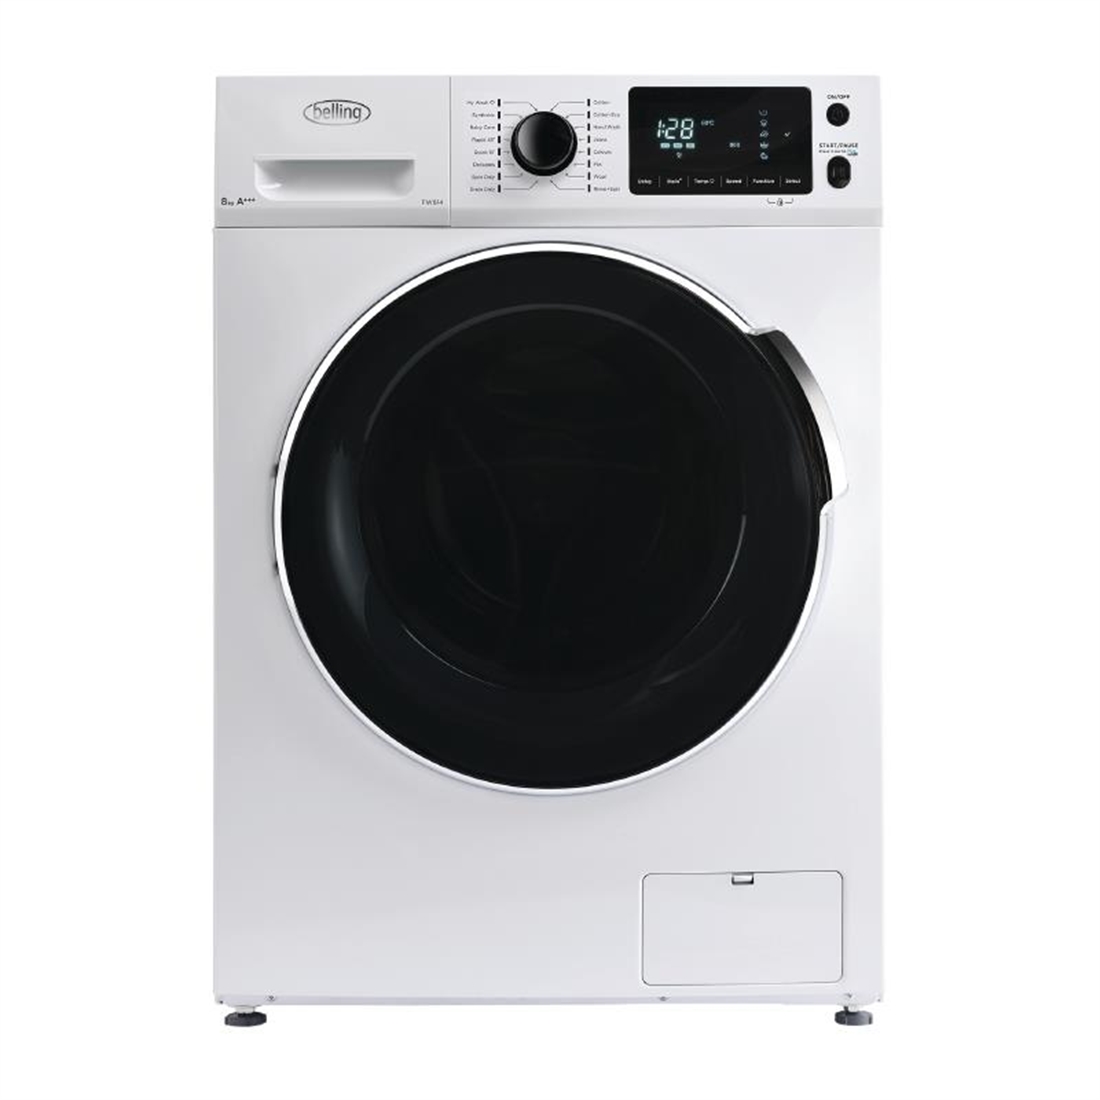 Belling Washing Machine White 8Kg